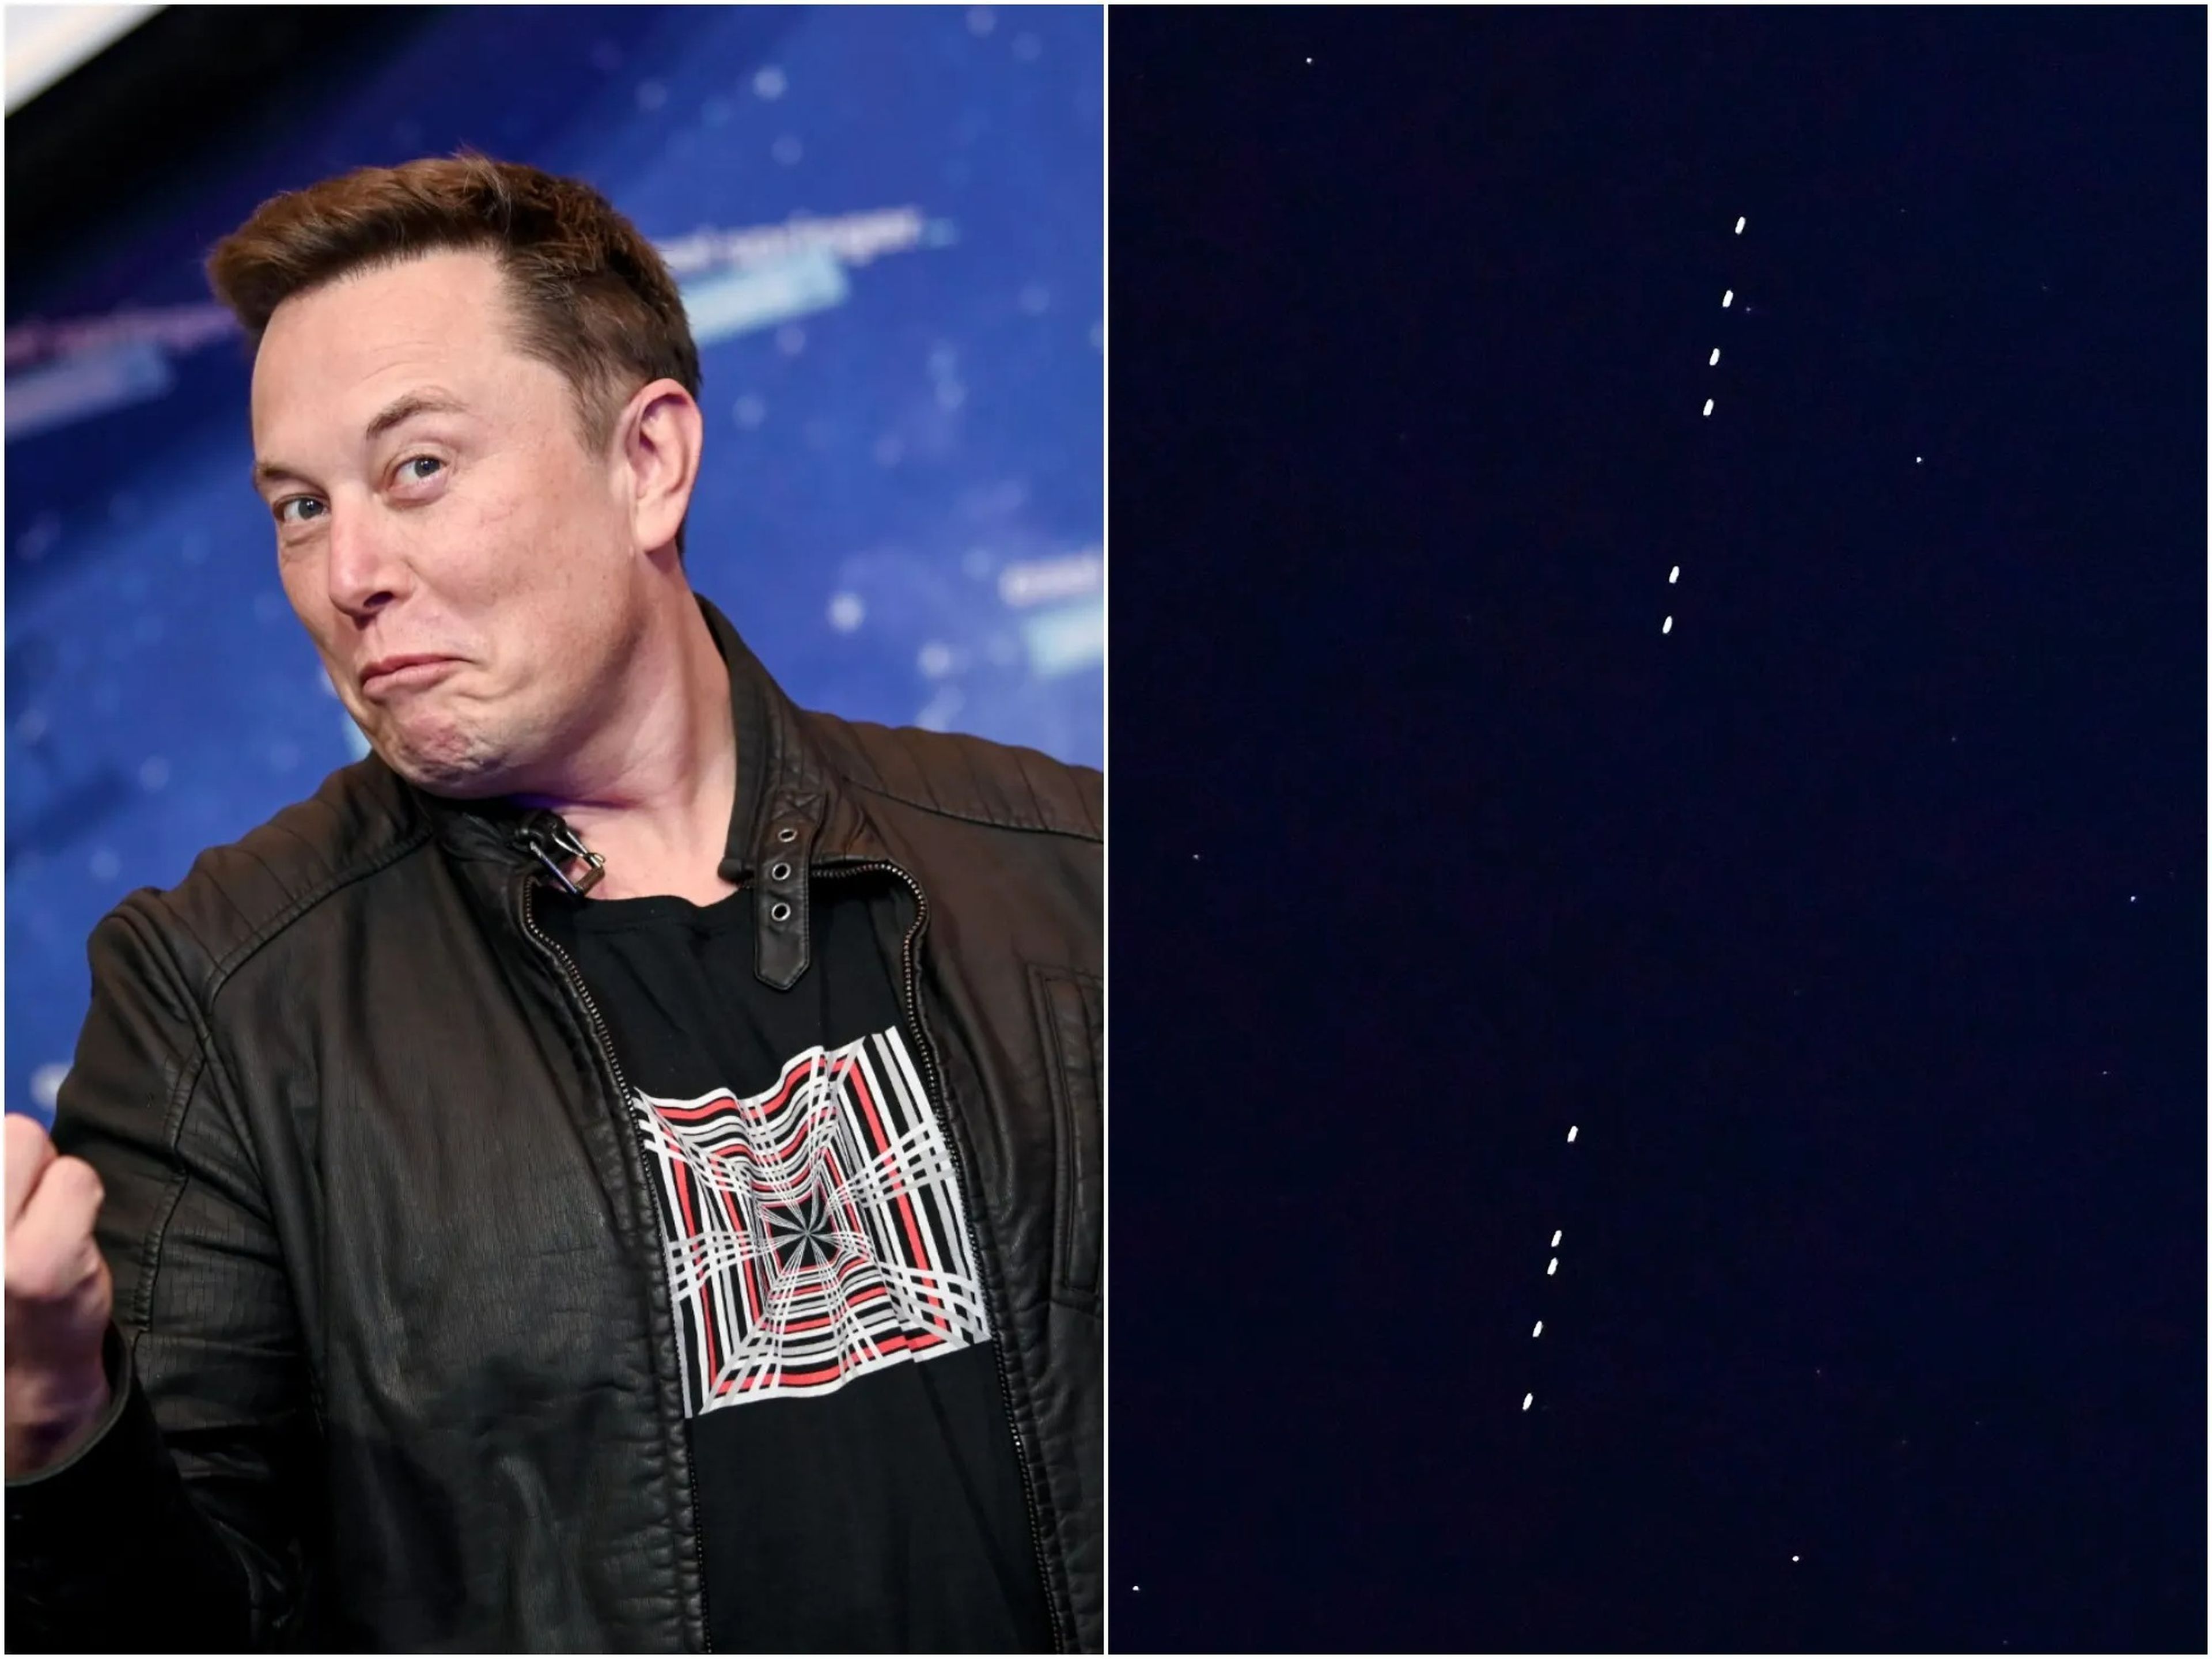 Elon Musk, CEO y fundador de SpaceX, junto a los satélites Starlink en el cielo nocturno.